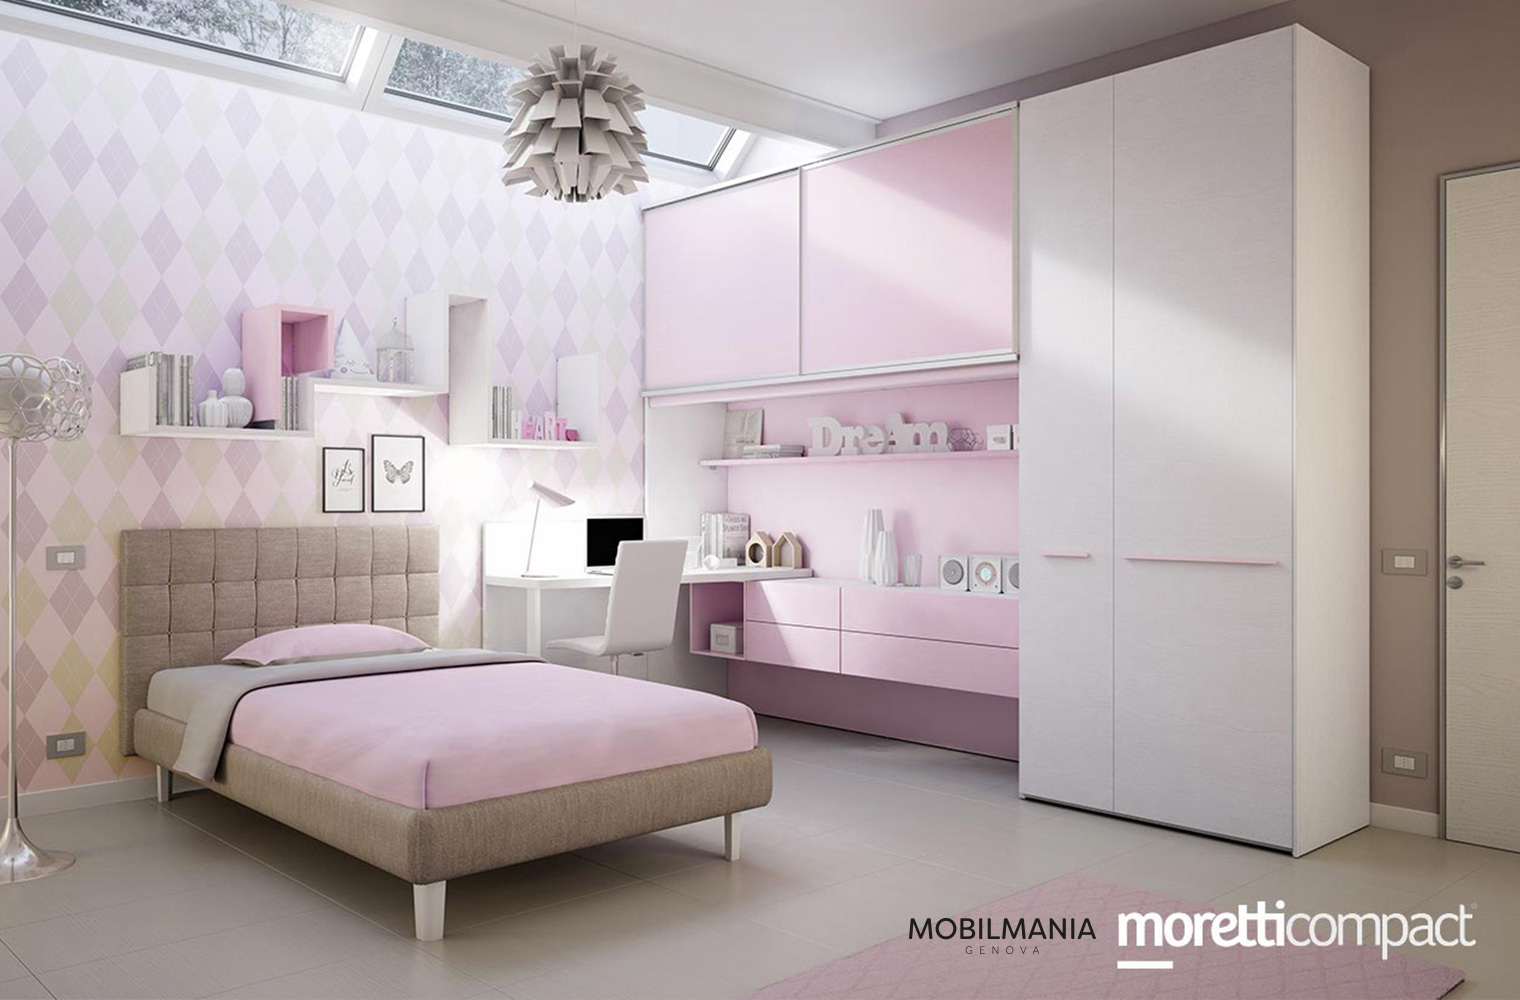 Mobilmania - Camerette Moretti Compact Genova